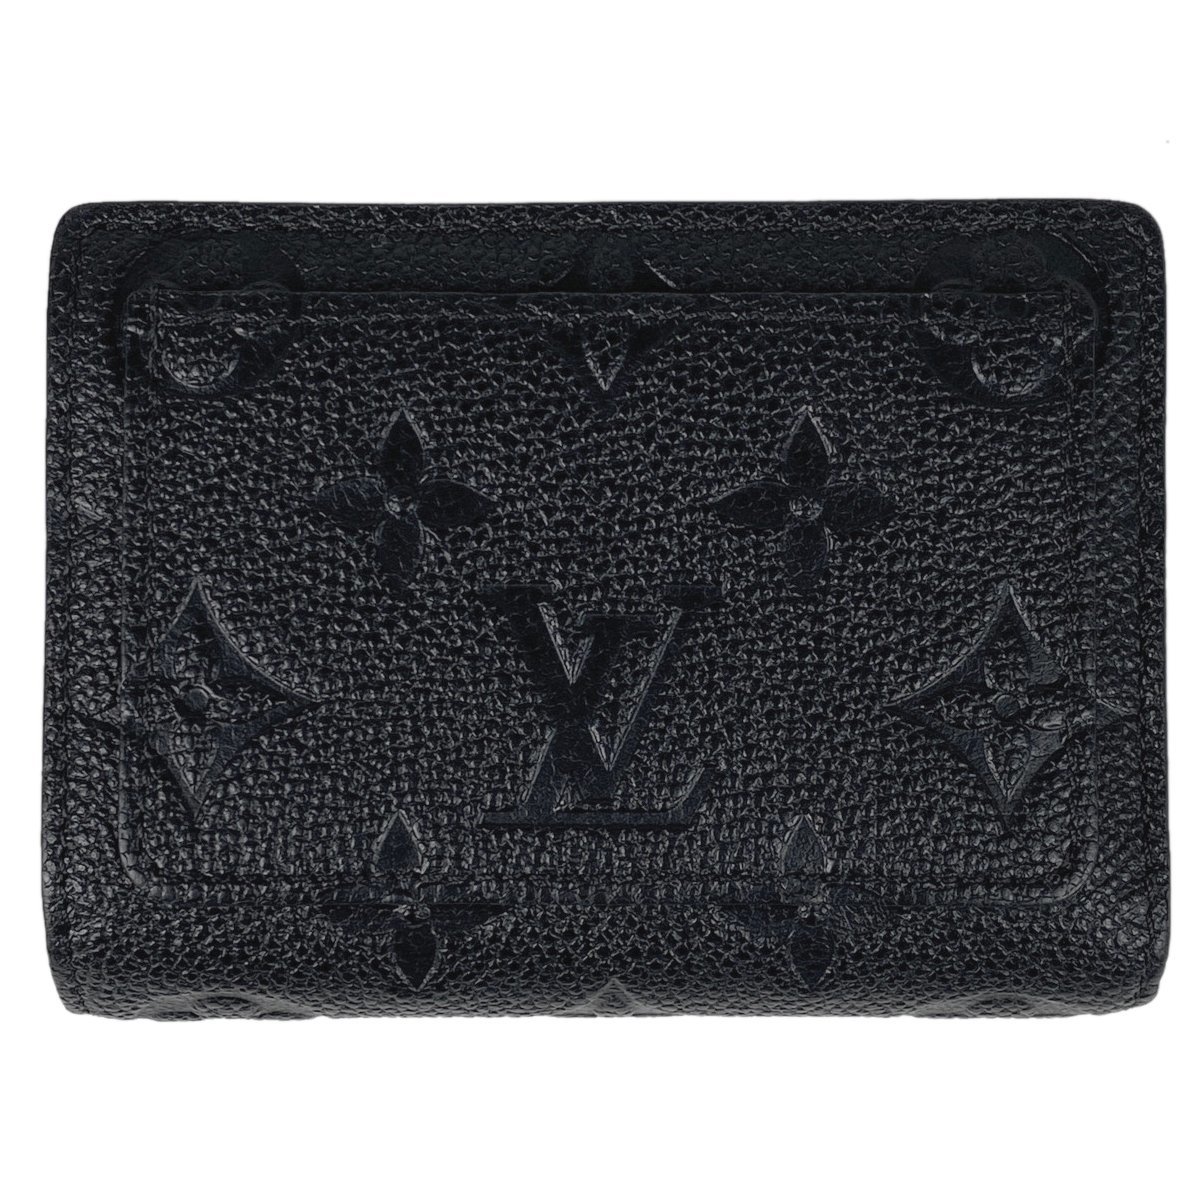 ルイ・ヴィトン Louis Vuitton ポルトフォイユ クレア 二つ折り財布 モノグラムアンプラント ノワール(ブラック) M80151 レディース 中古